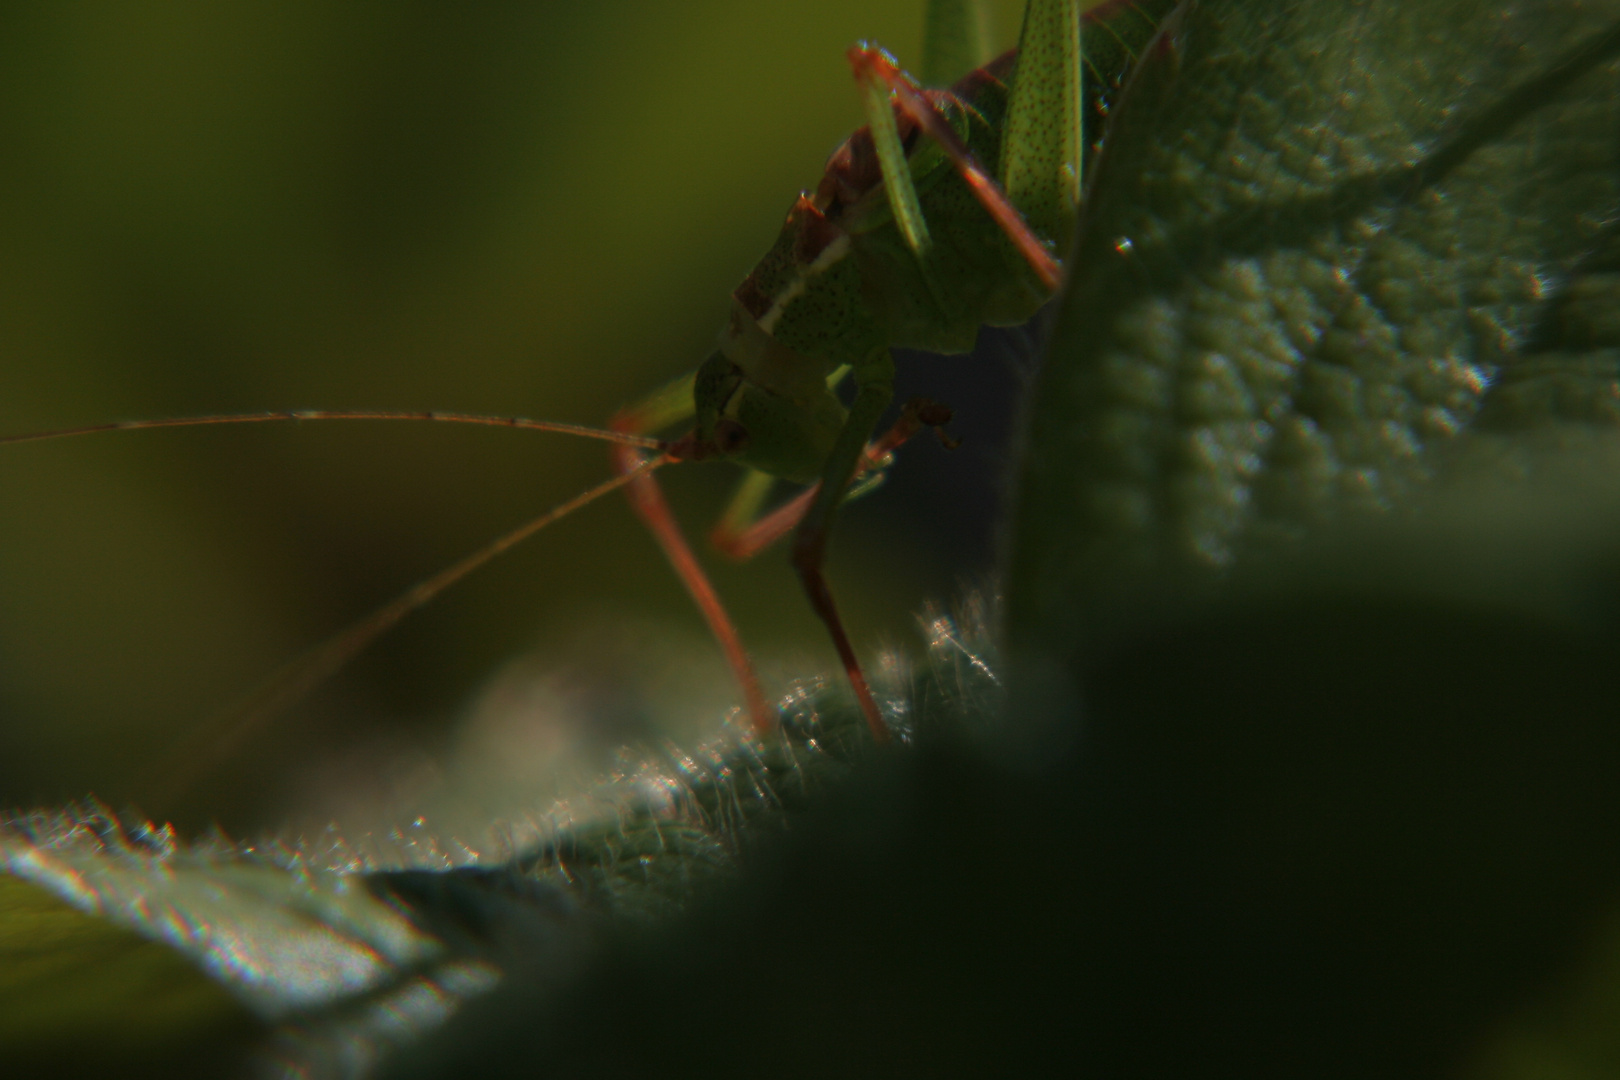 -The Grasshopper-